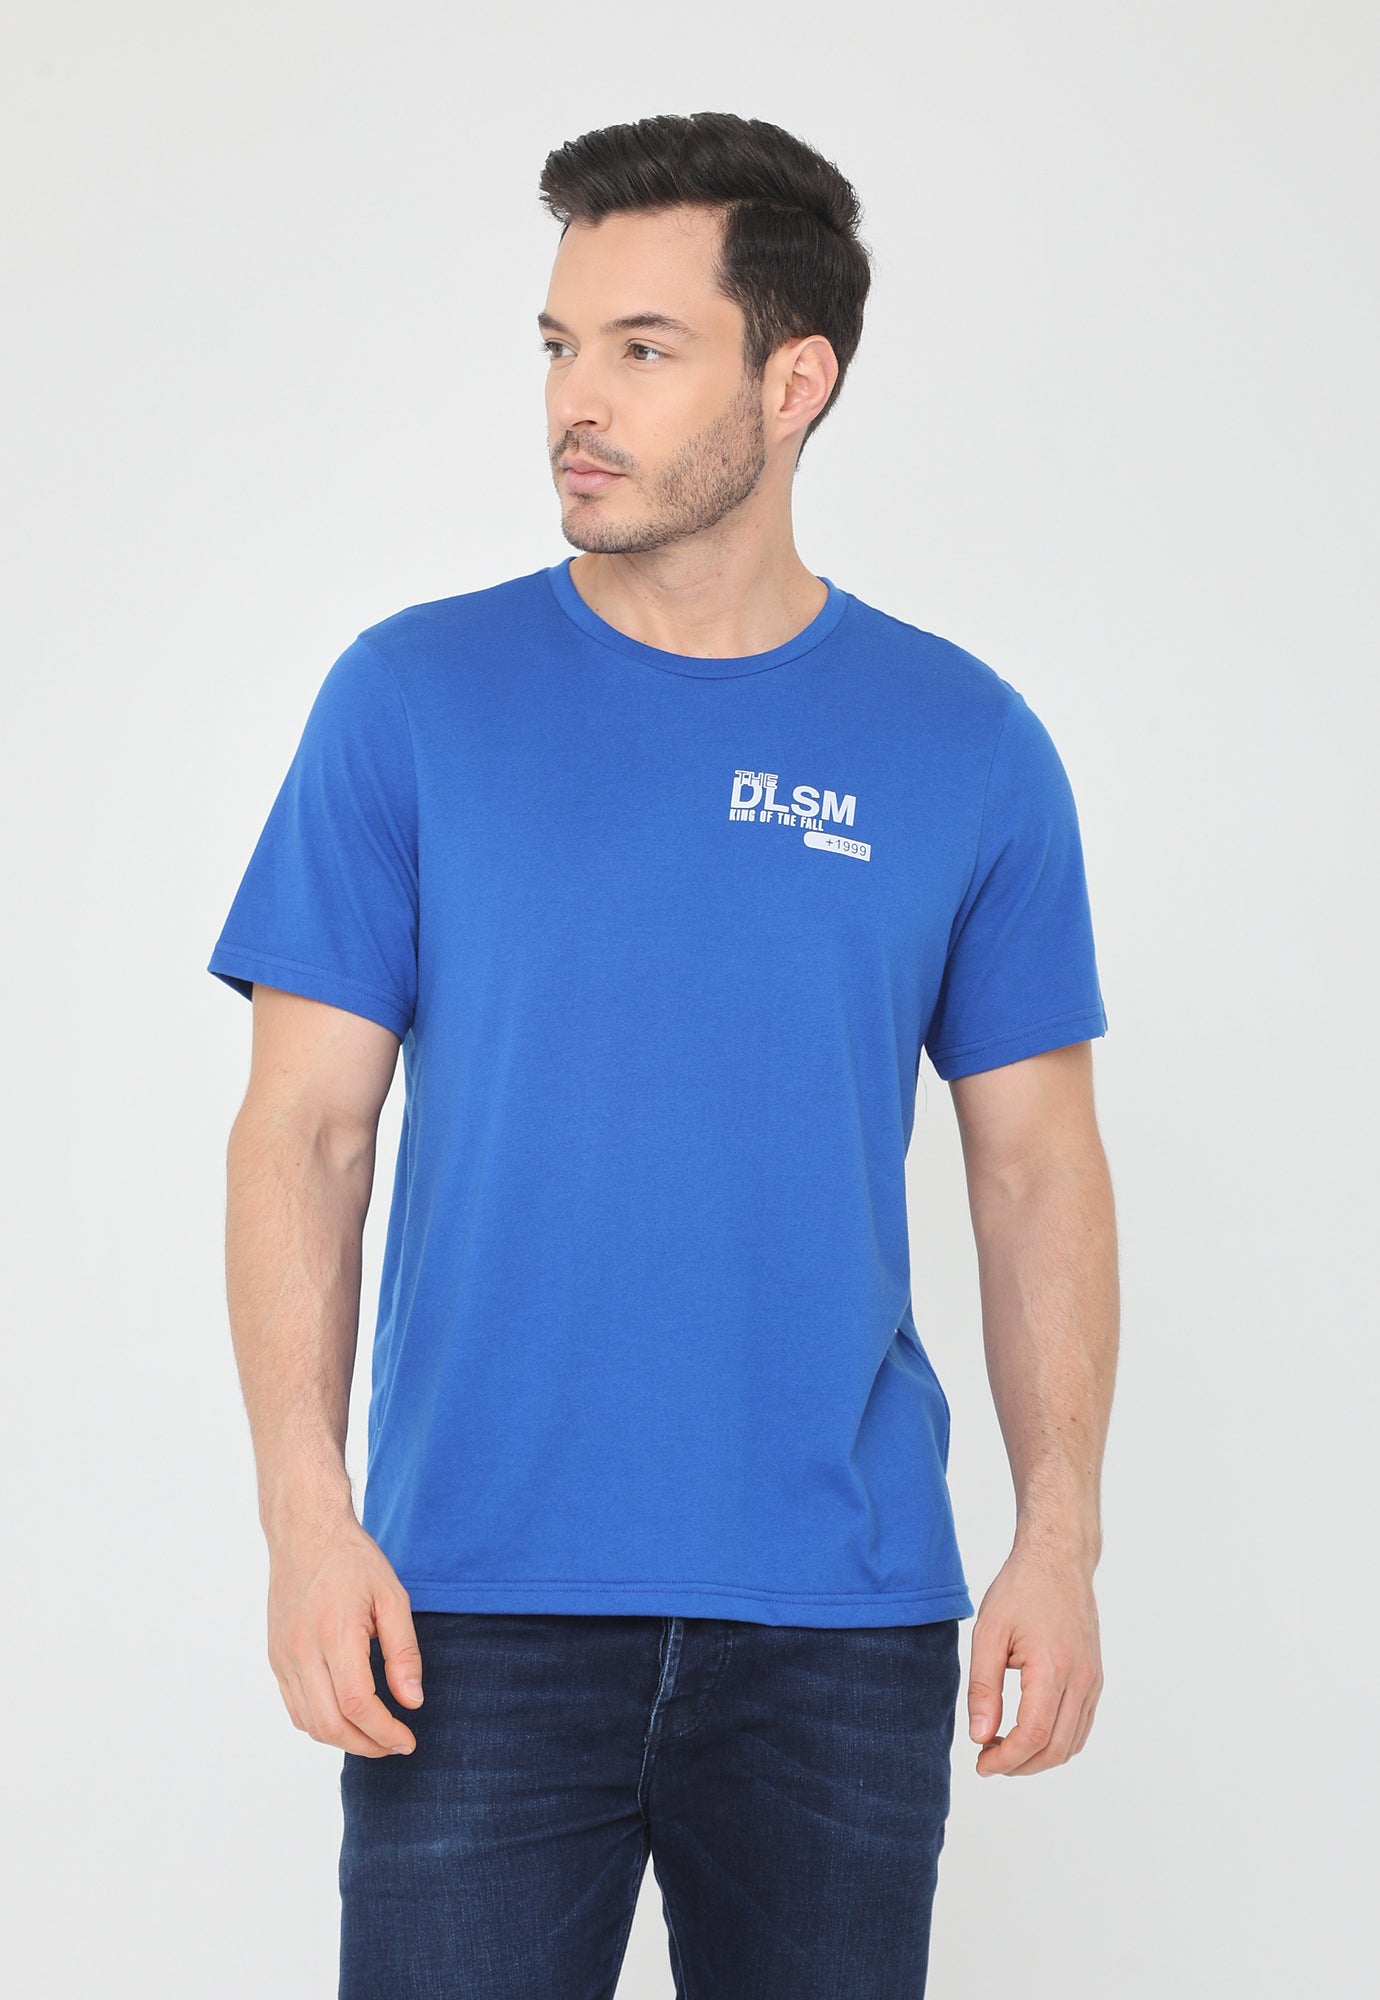 Camiseta azul rey manga corta, estampado pequeño en frente y en posterior para hombre